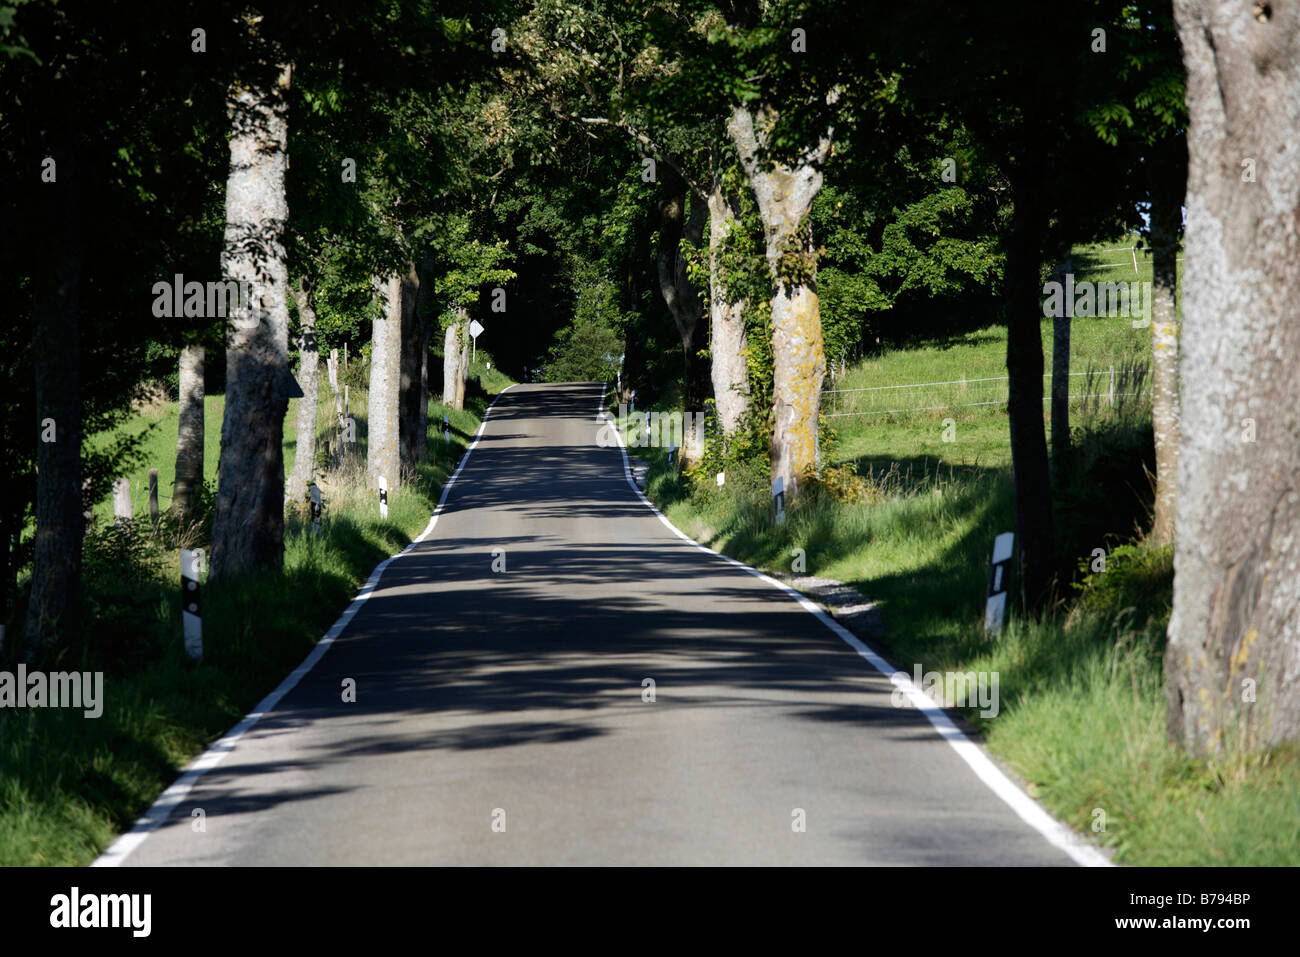 Germany, Bavaria, Upper Bavaria, Treelined country road Stock Photo